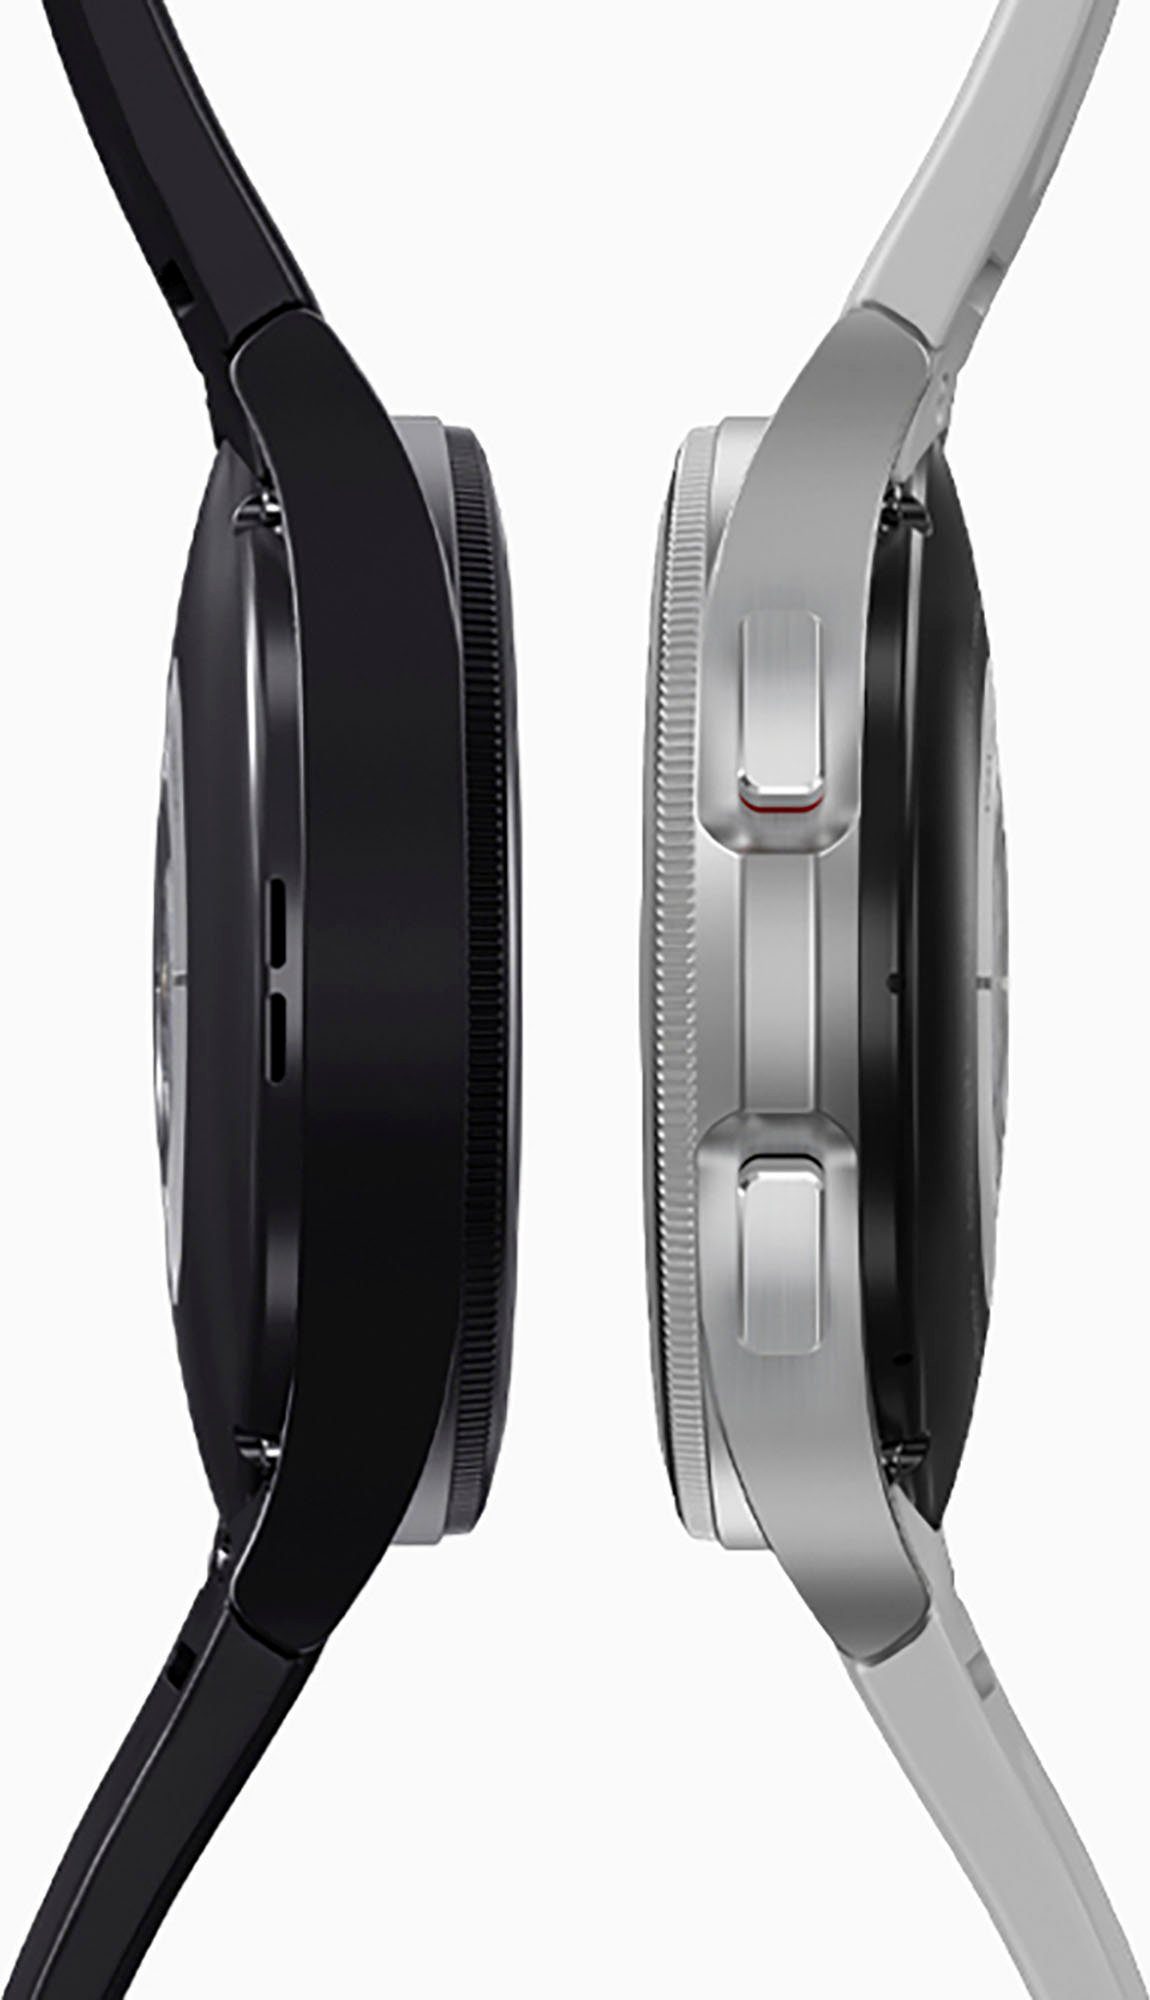 Samsung Galaxy LTE Fitness 4 OS classic by (3,46 Zoll, cm/1,4 Google), Watch Gesundheitsfunktionen Uhr, schwarz Tracker, | Fitness 46mm schwarz Smartwatch Wear